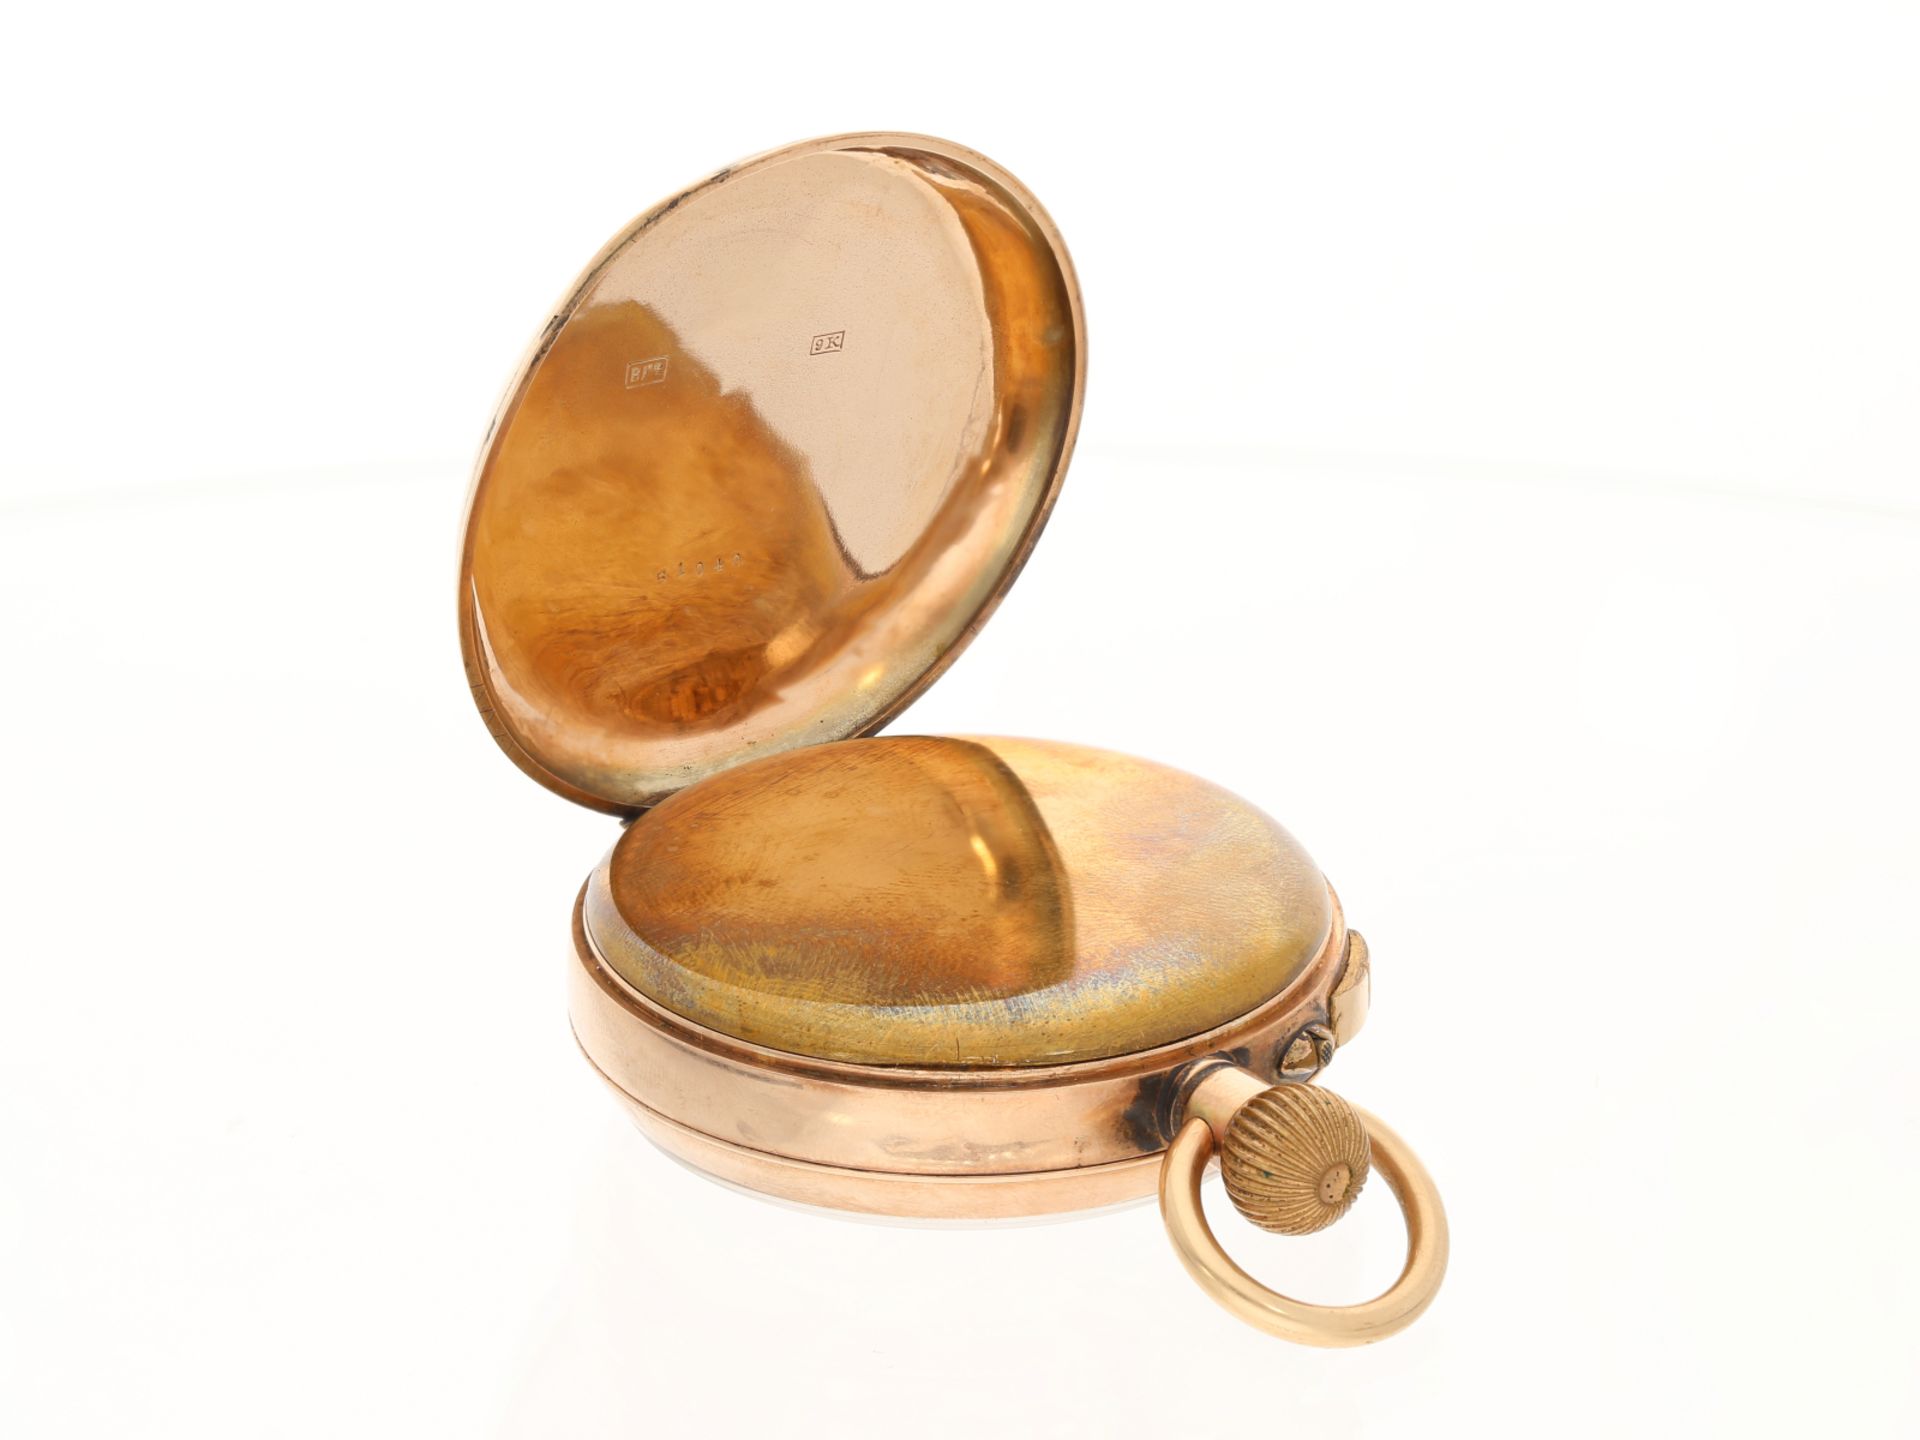 Taschenuhr: Englische 9K Gold Doctor's watch mit ausgefallener vergoldeter Uhrenkette, ca. 1880 - Bild 4 aus 6